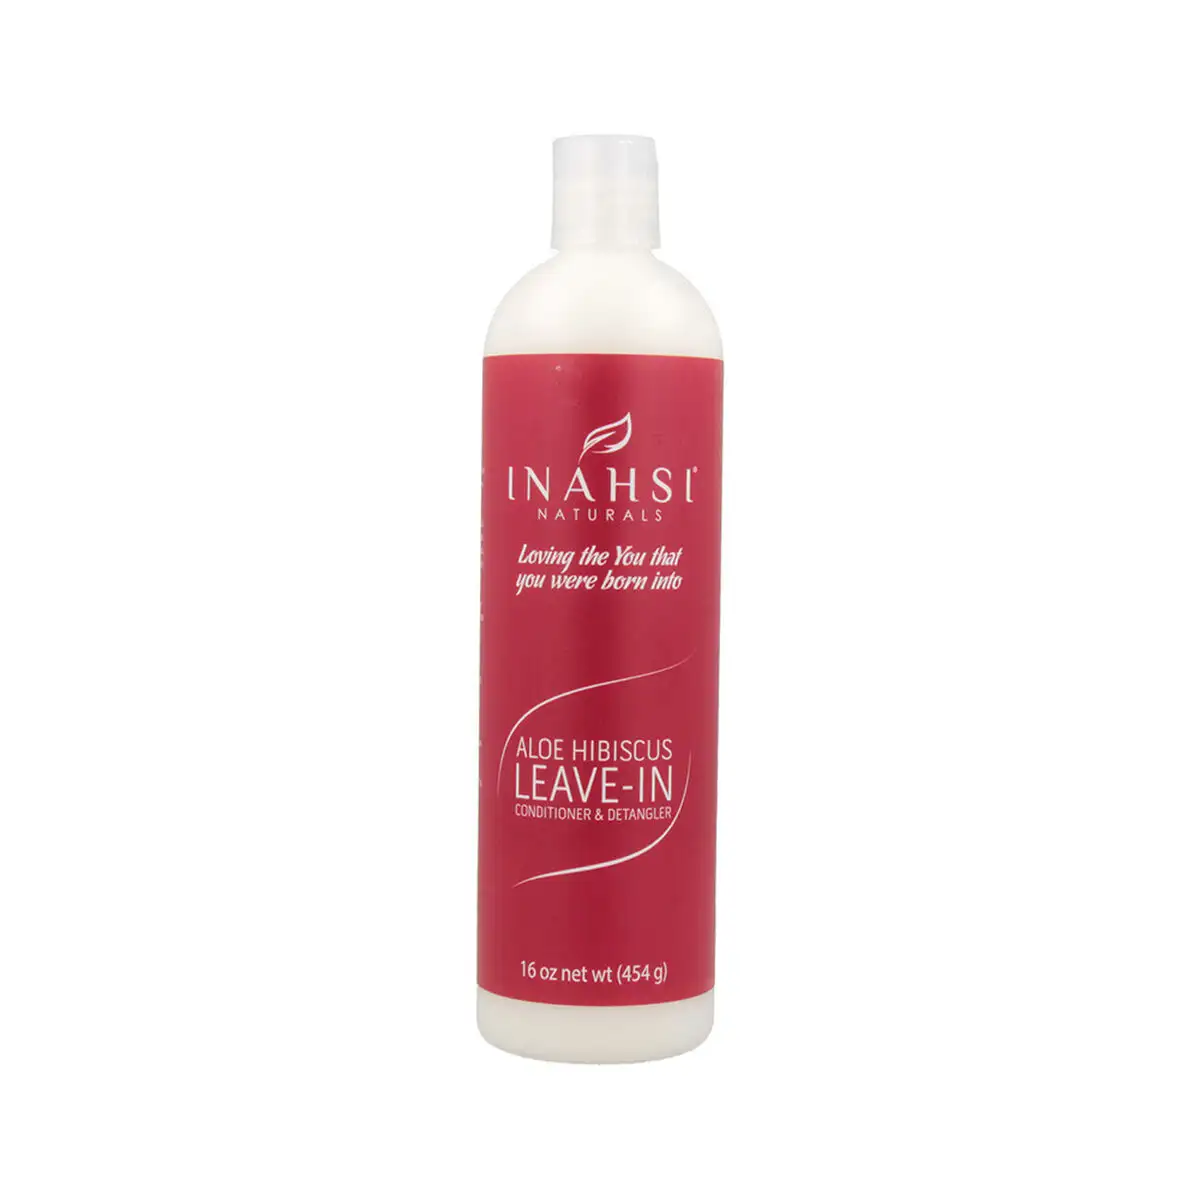 Apres shampooing inahsi hibiscus leave in detangler 454 g _3593. DIAYTAR SENEGAL - Votre Plaisir Shopping à Portée de Clic. Explorez notre boutique en ligne et trouvez des produits qui ajoutent une touche de bonheur à votre vie quotidienne.